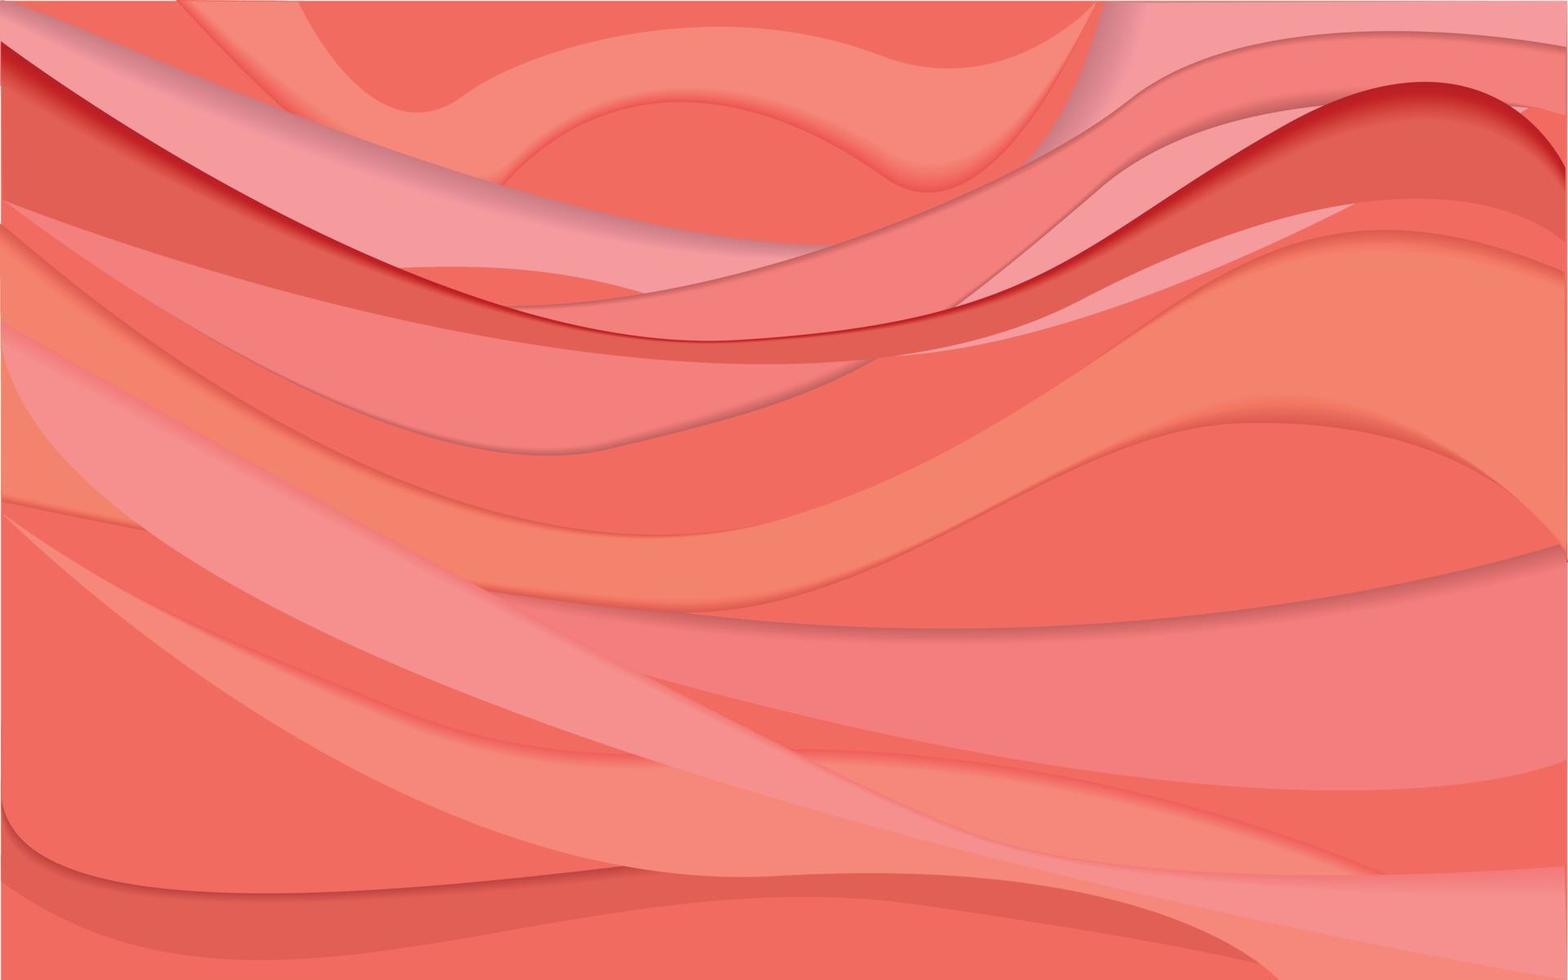 Vektor abstrakter korallenroter und orangefarbener Hintergrund aus horizontal und diagonal verlaufenden Linien. sommer, fröhlich, fröhlich, hell. Platz kopieren. Farbe Mohn Sonnenuntergang